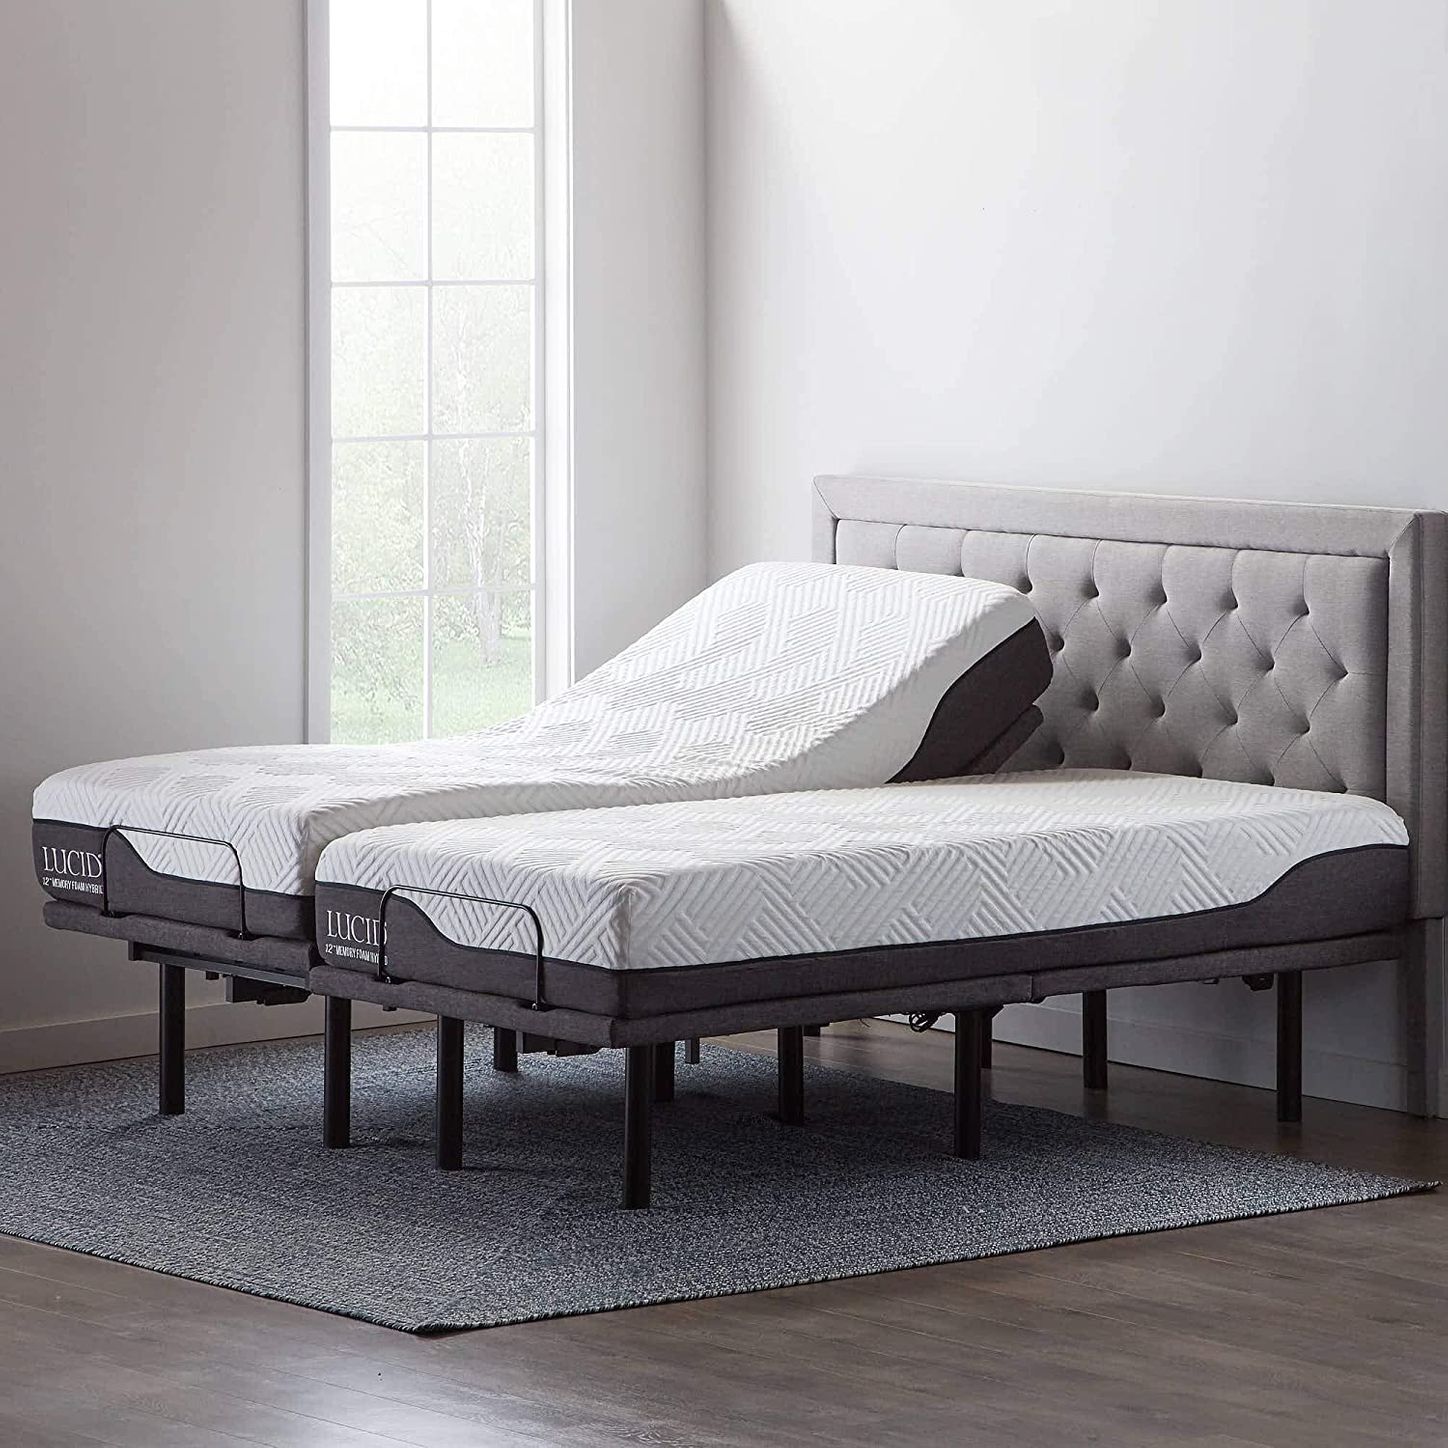 10 Best Adjustable Bed Bases 2021 The, King Size Electric Adjustable Bed Frame Split